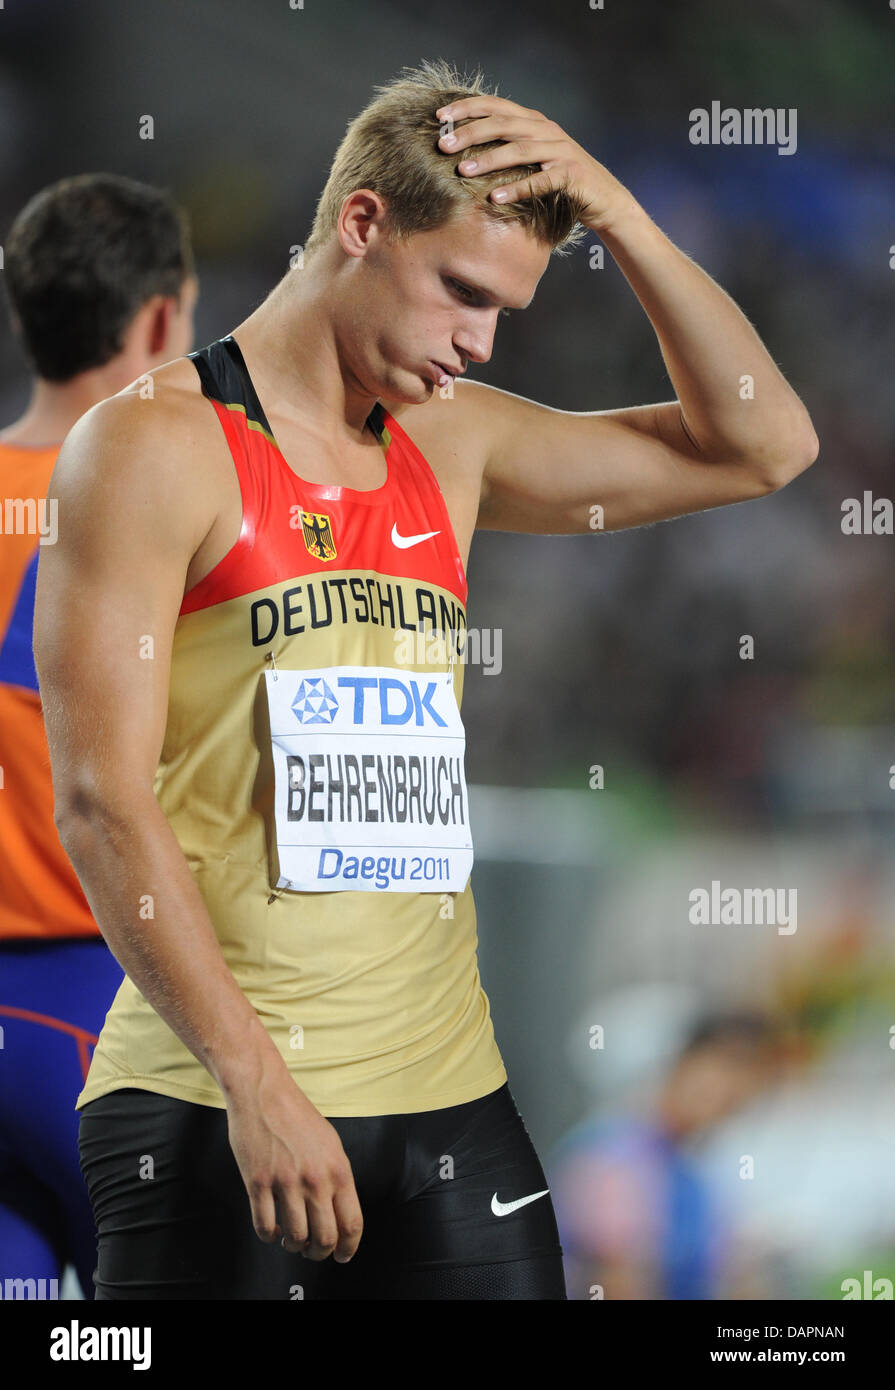 Pascal Behrenbruch Deutschlands reagiert bei Hochsprung Zehnkampf-Wettbewerb bei der 13. IAAF Weltmeisterschaften in der Leichtathletik in Daegu, Südkorea, 27. August 2011. Foto: Rainer Jensen Dpa +++(c) Dpa - Bildfunk +++ Stockfoto